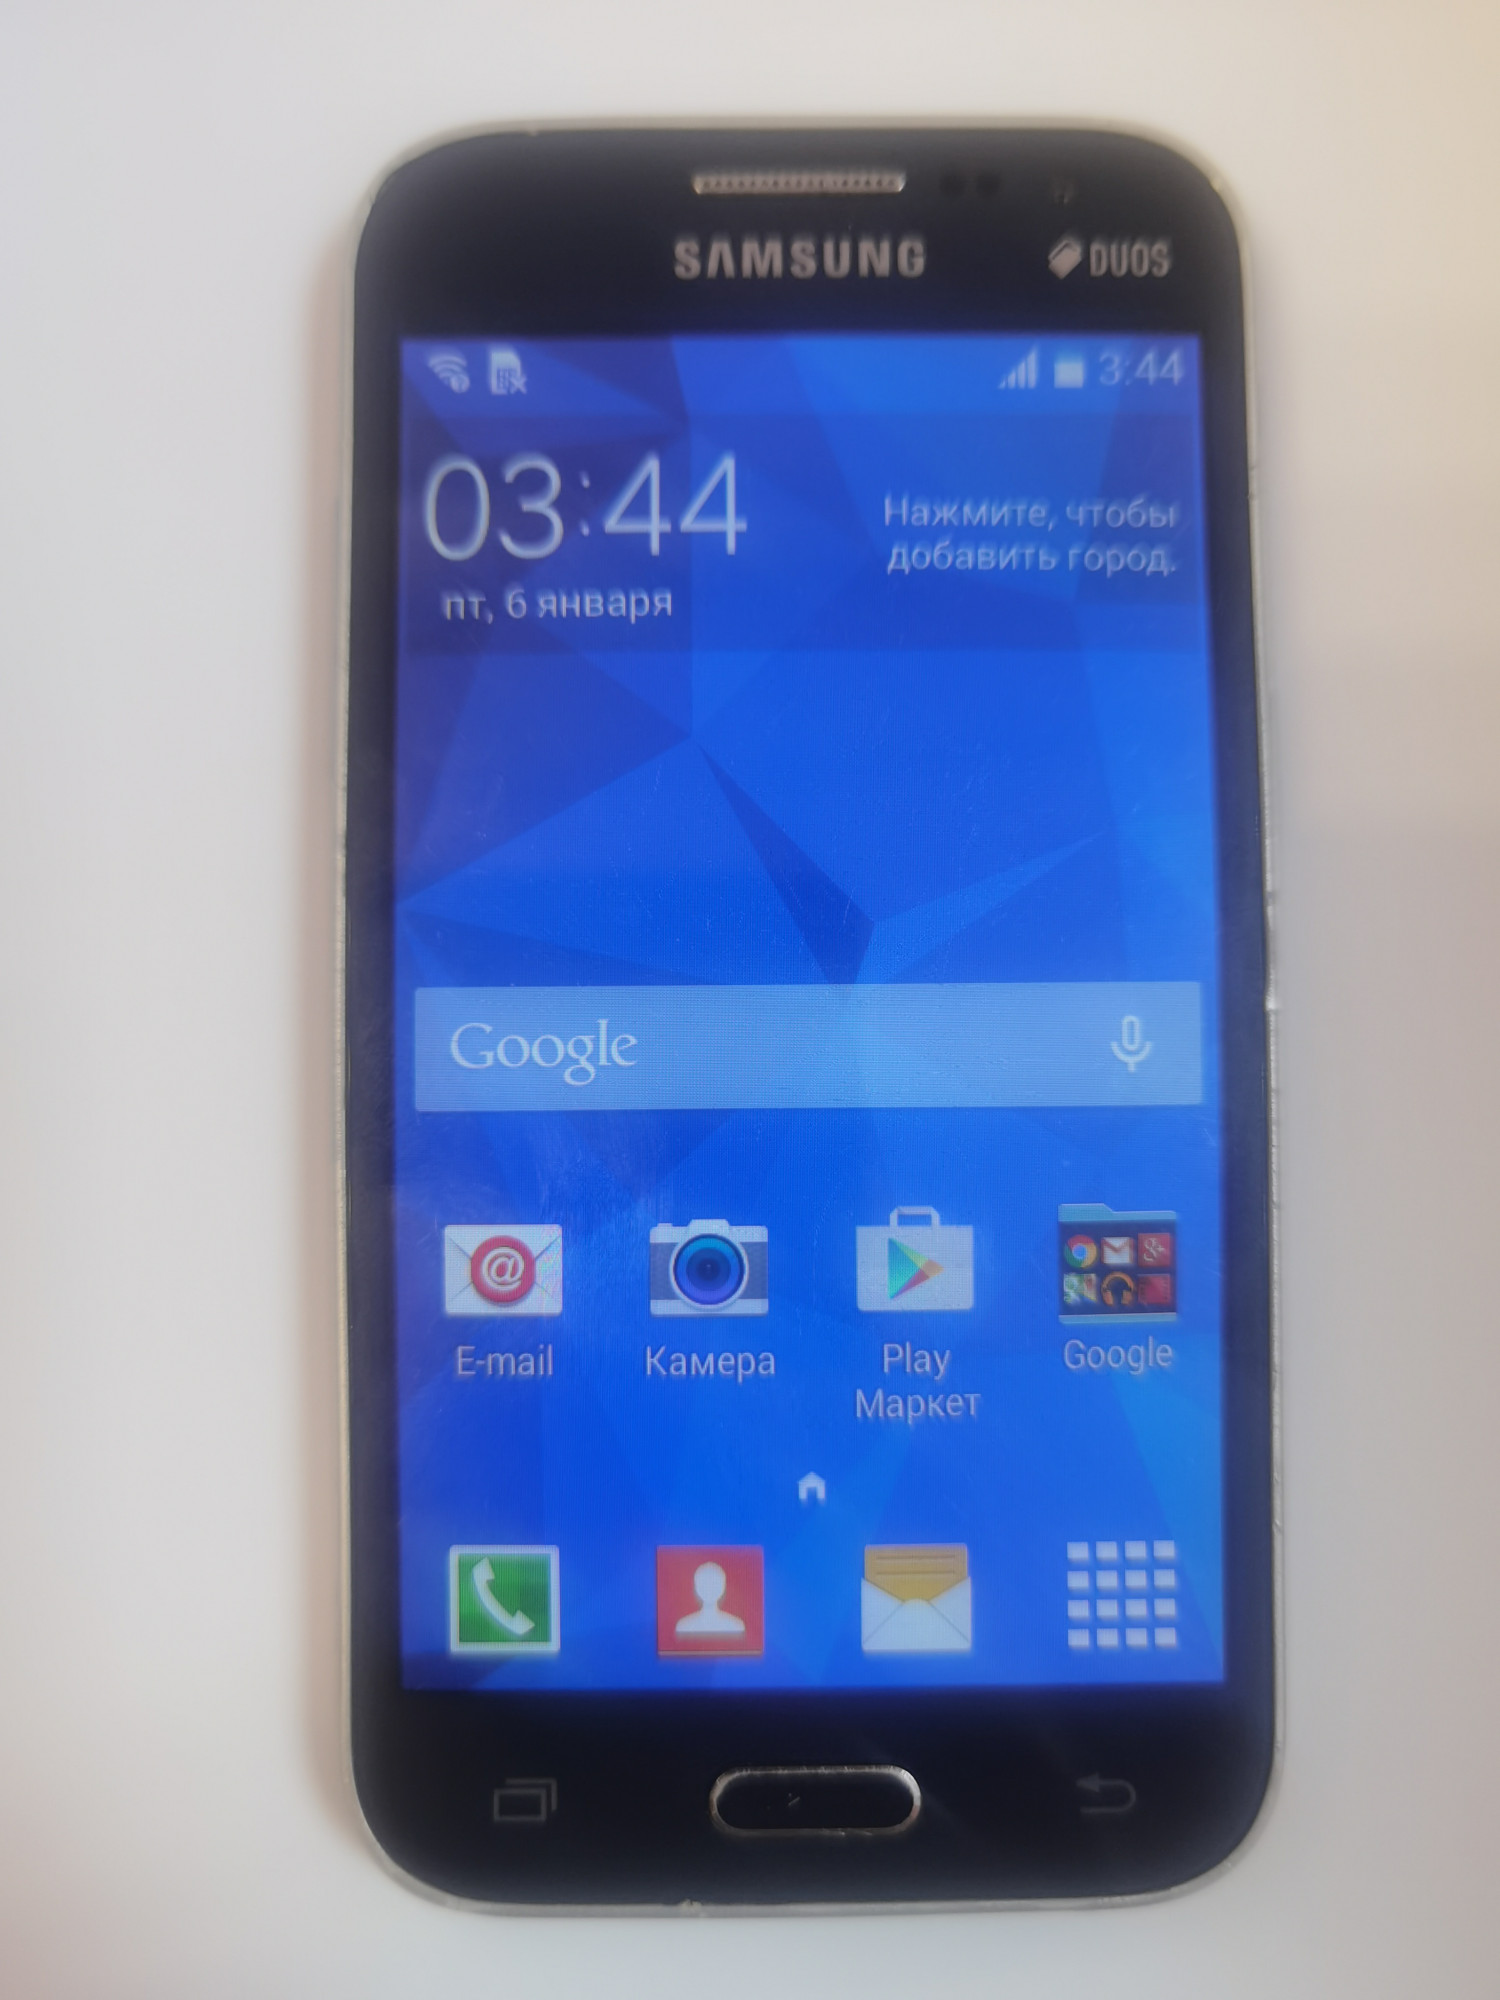 Samsung Galaxy Core Prime (SM-G360H) 1/8Gb 0